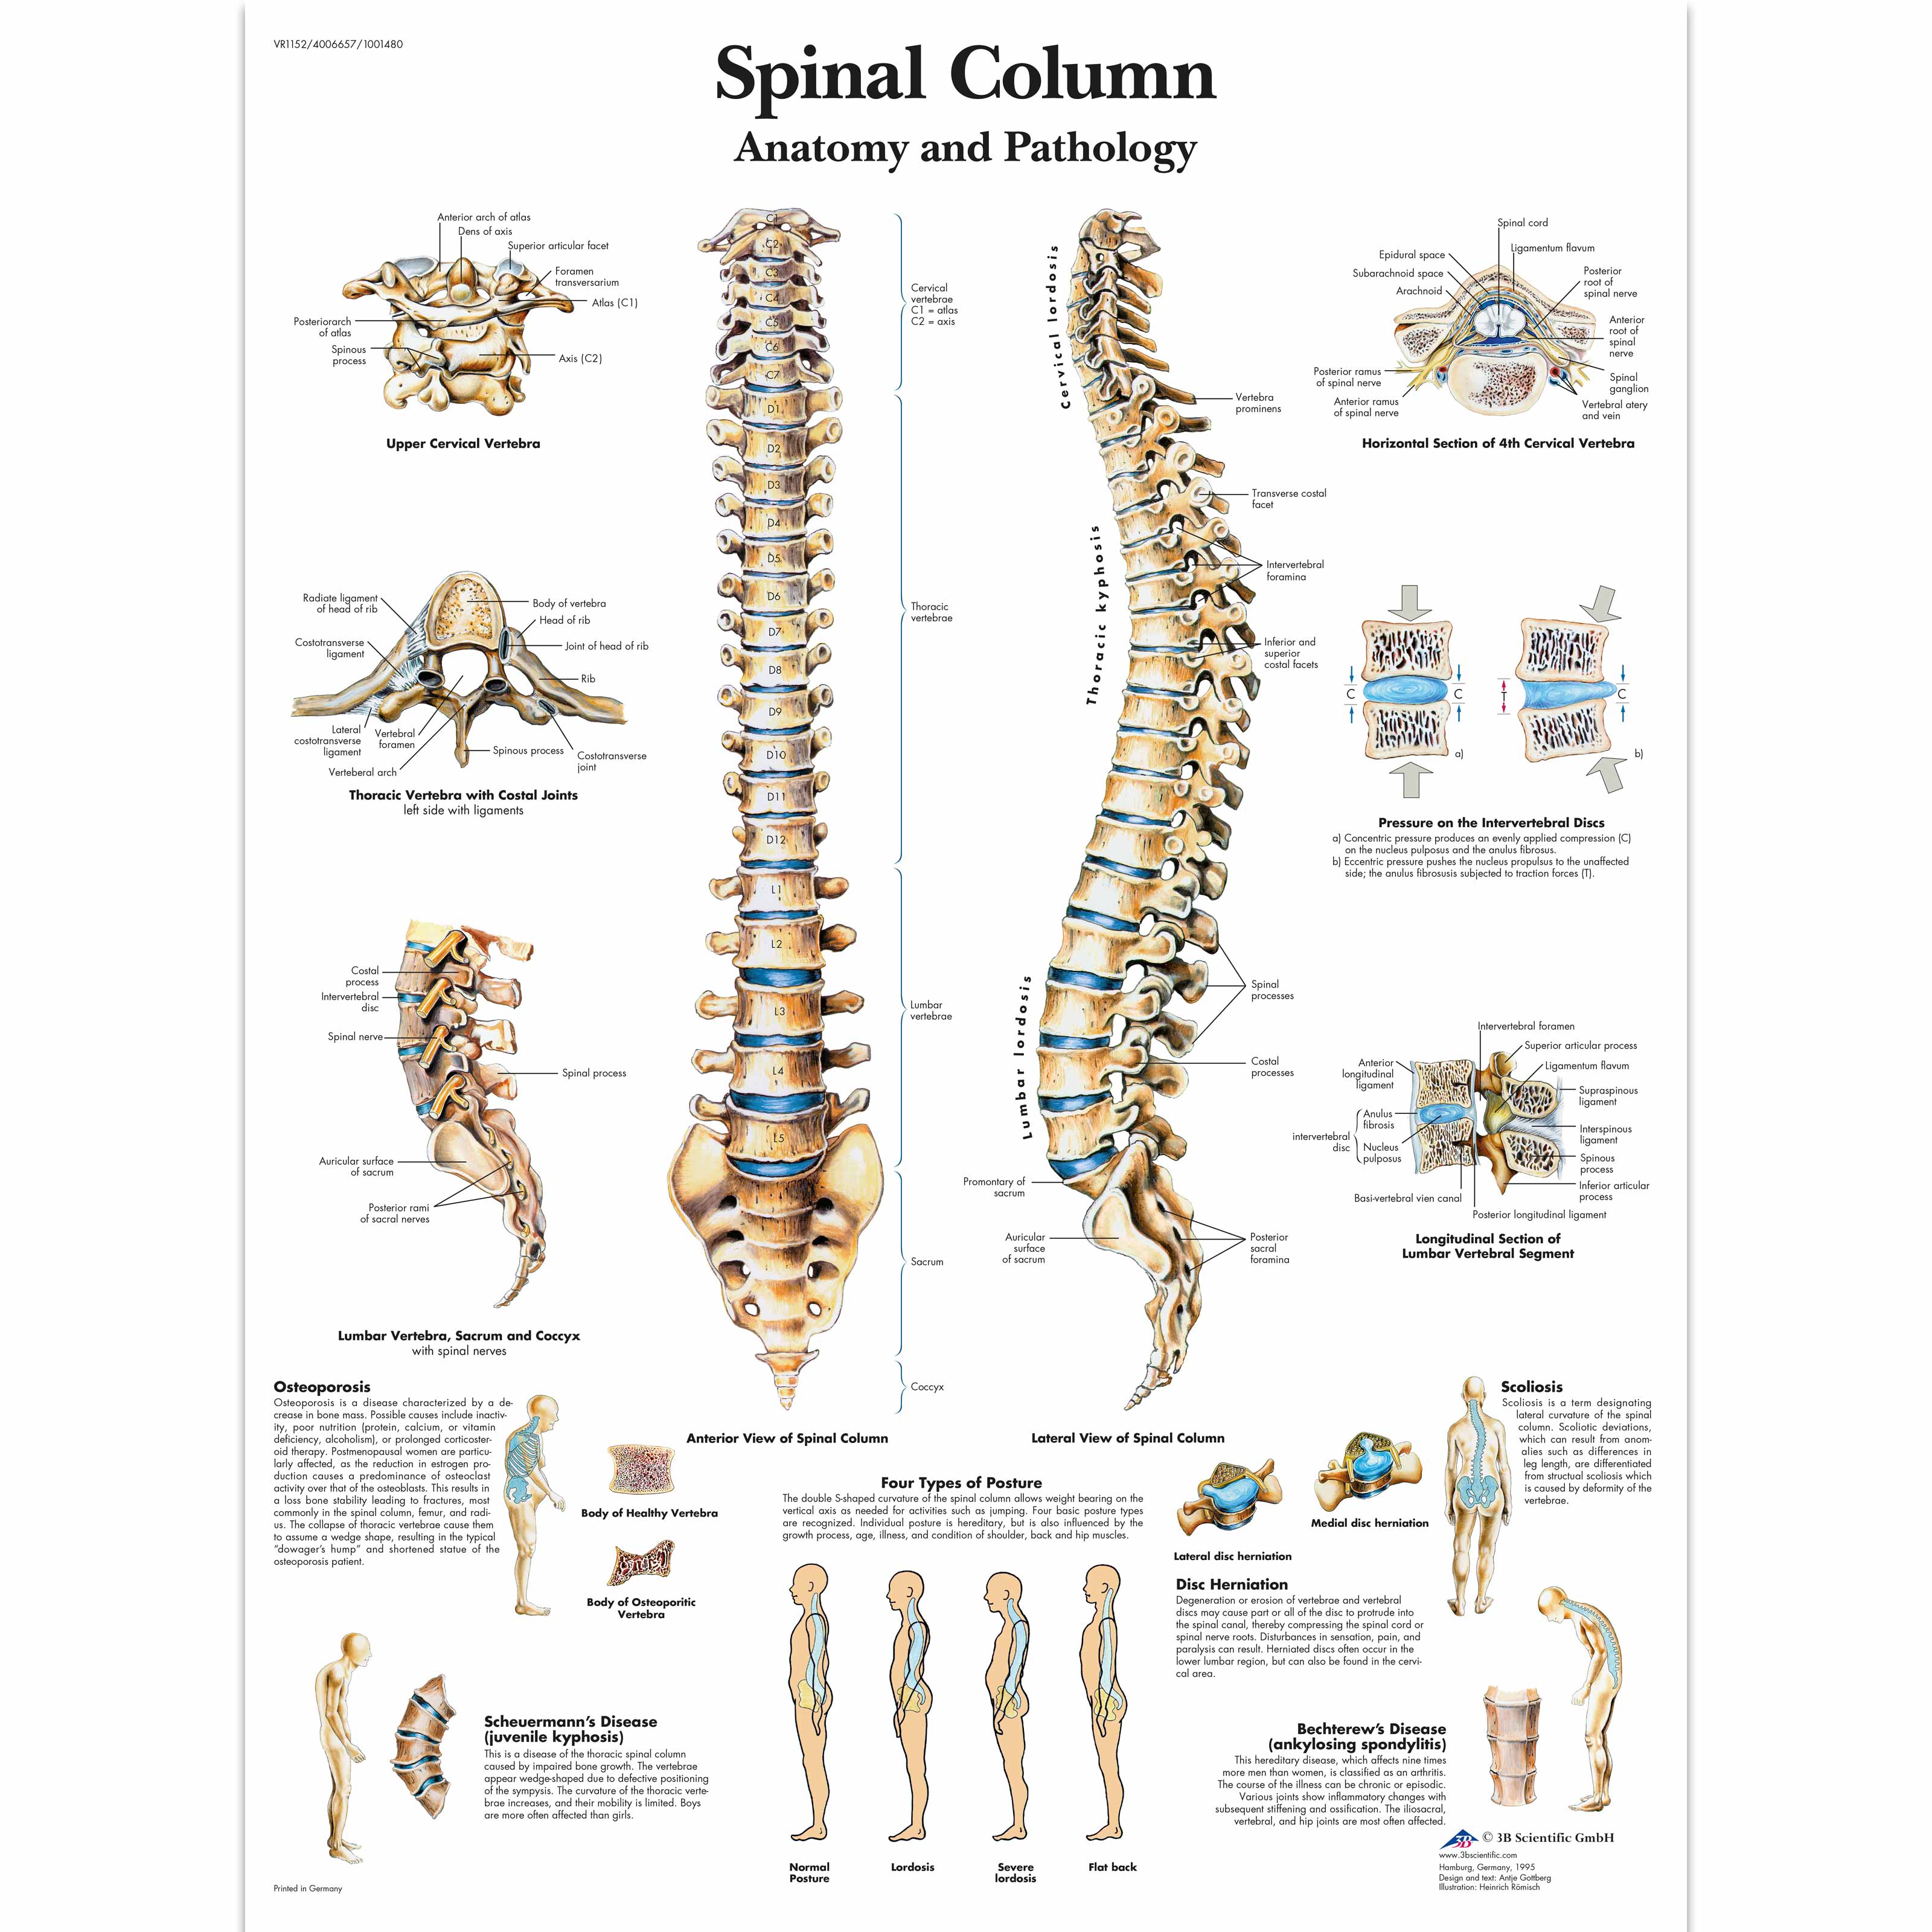 Spinal column photo